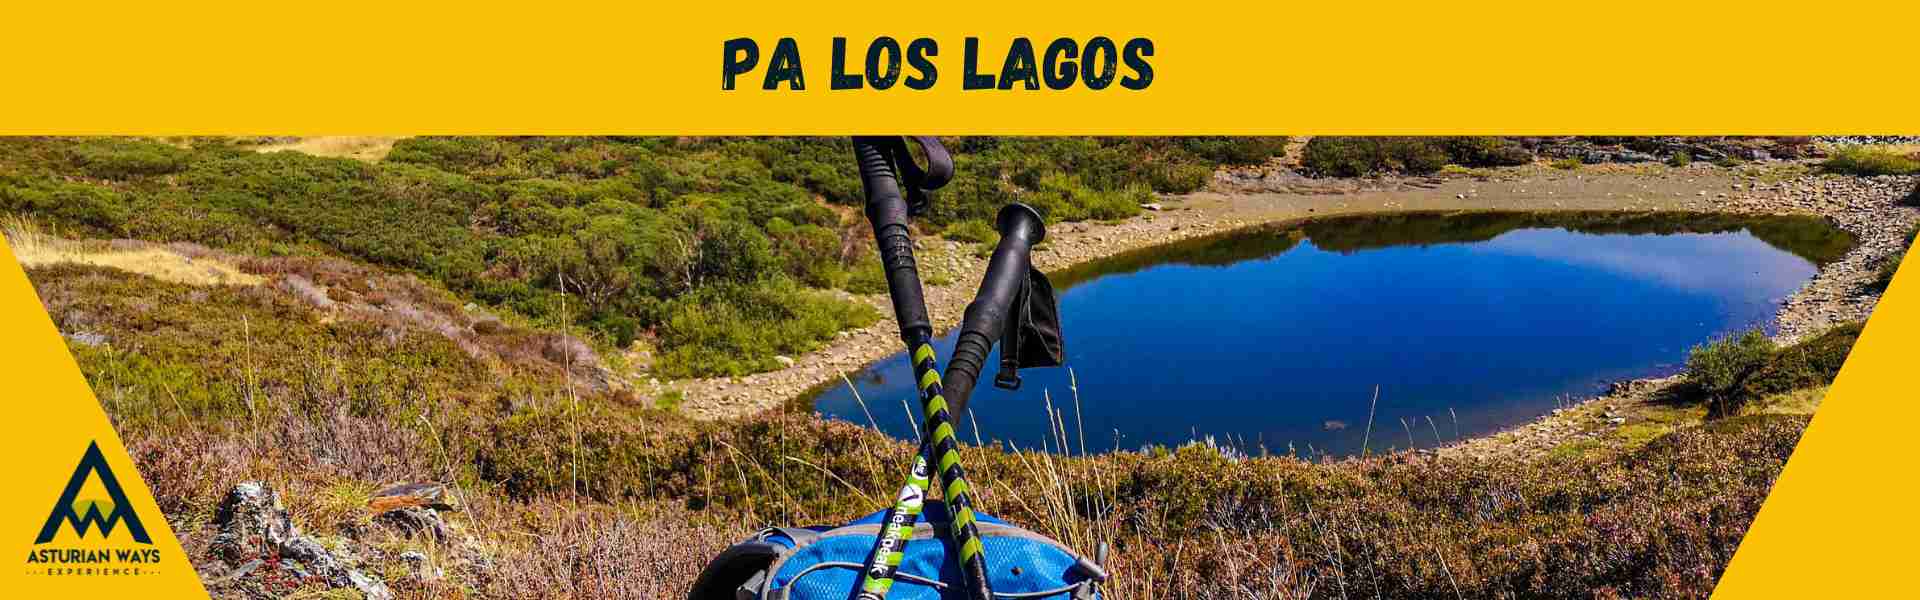 Rutas Lagos de Asturias. Ciclo Pa los Lagos.